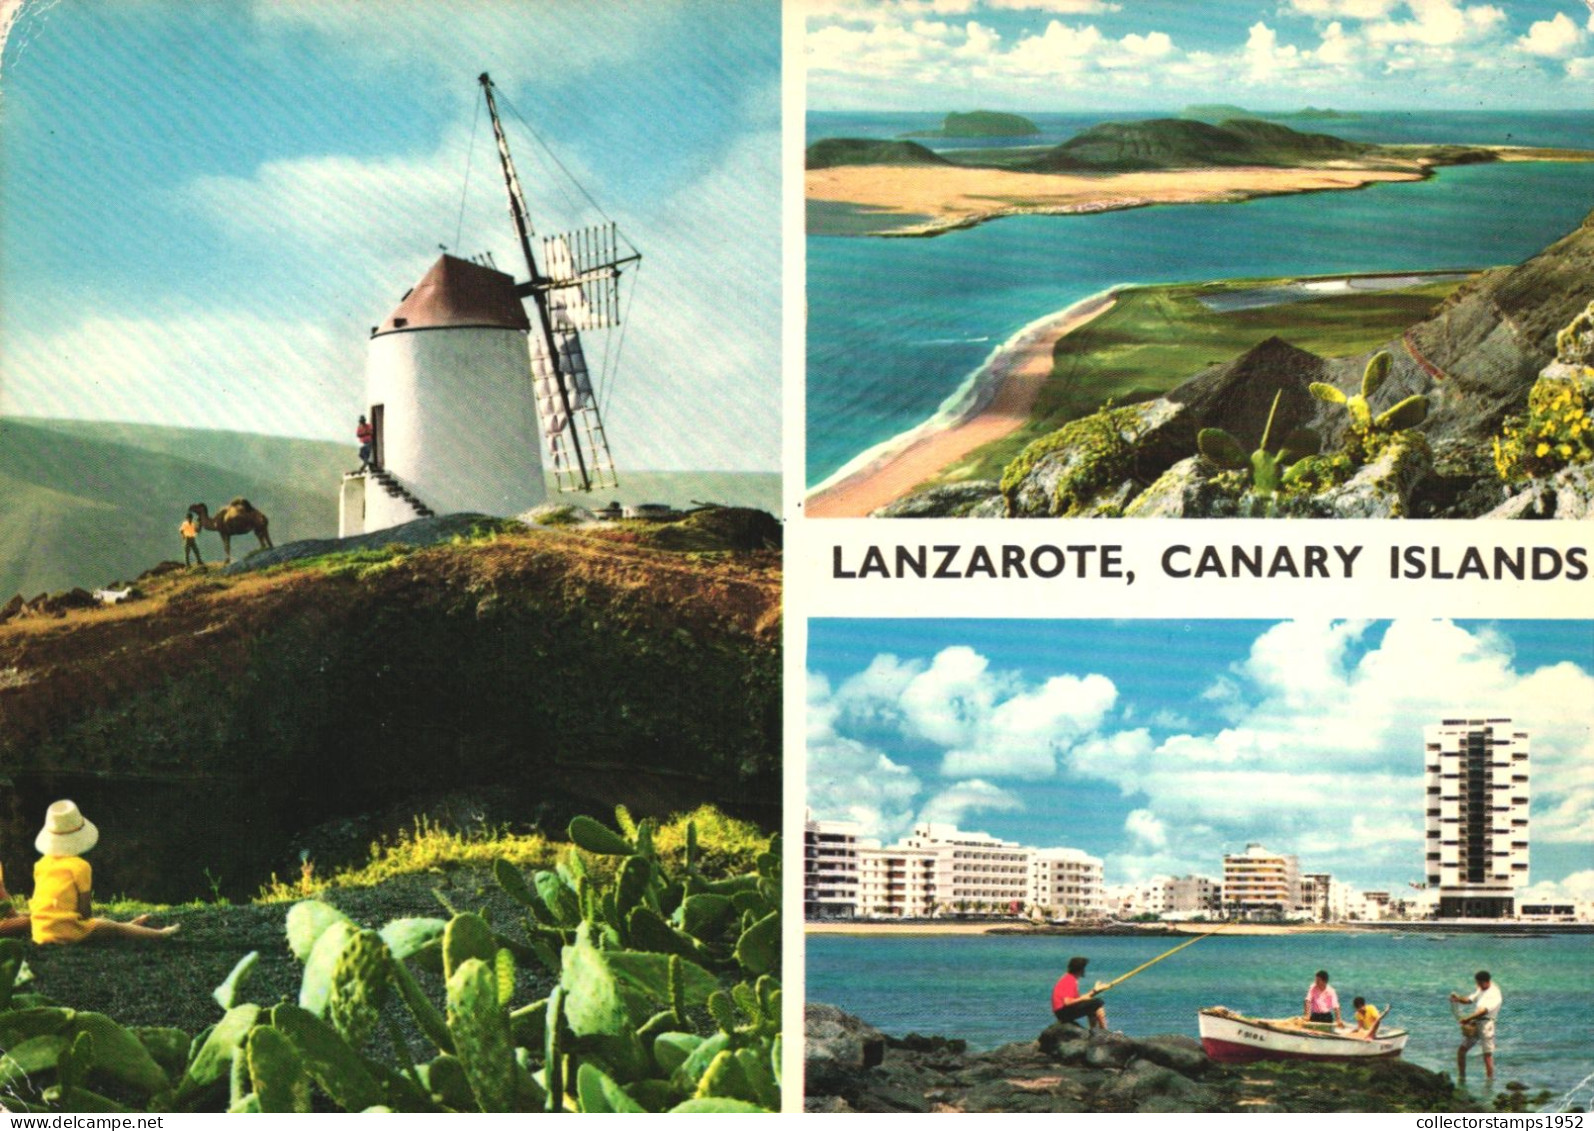 SPAIN, CANARY ISLANDS, LANZAROTE, PANORAMA, WINDMILL, SEA, BOAT - Lanzarote